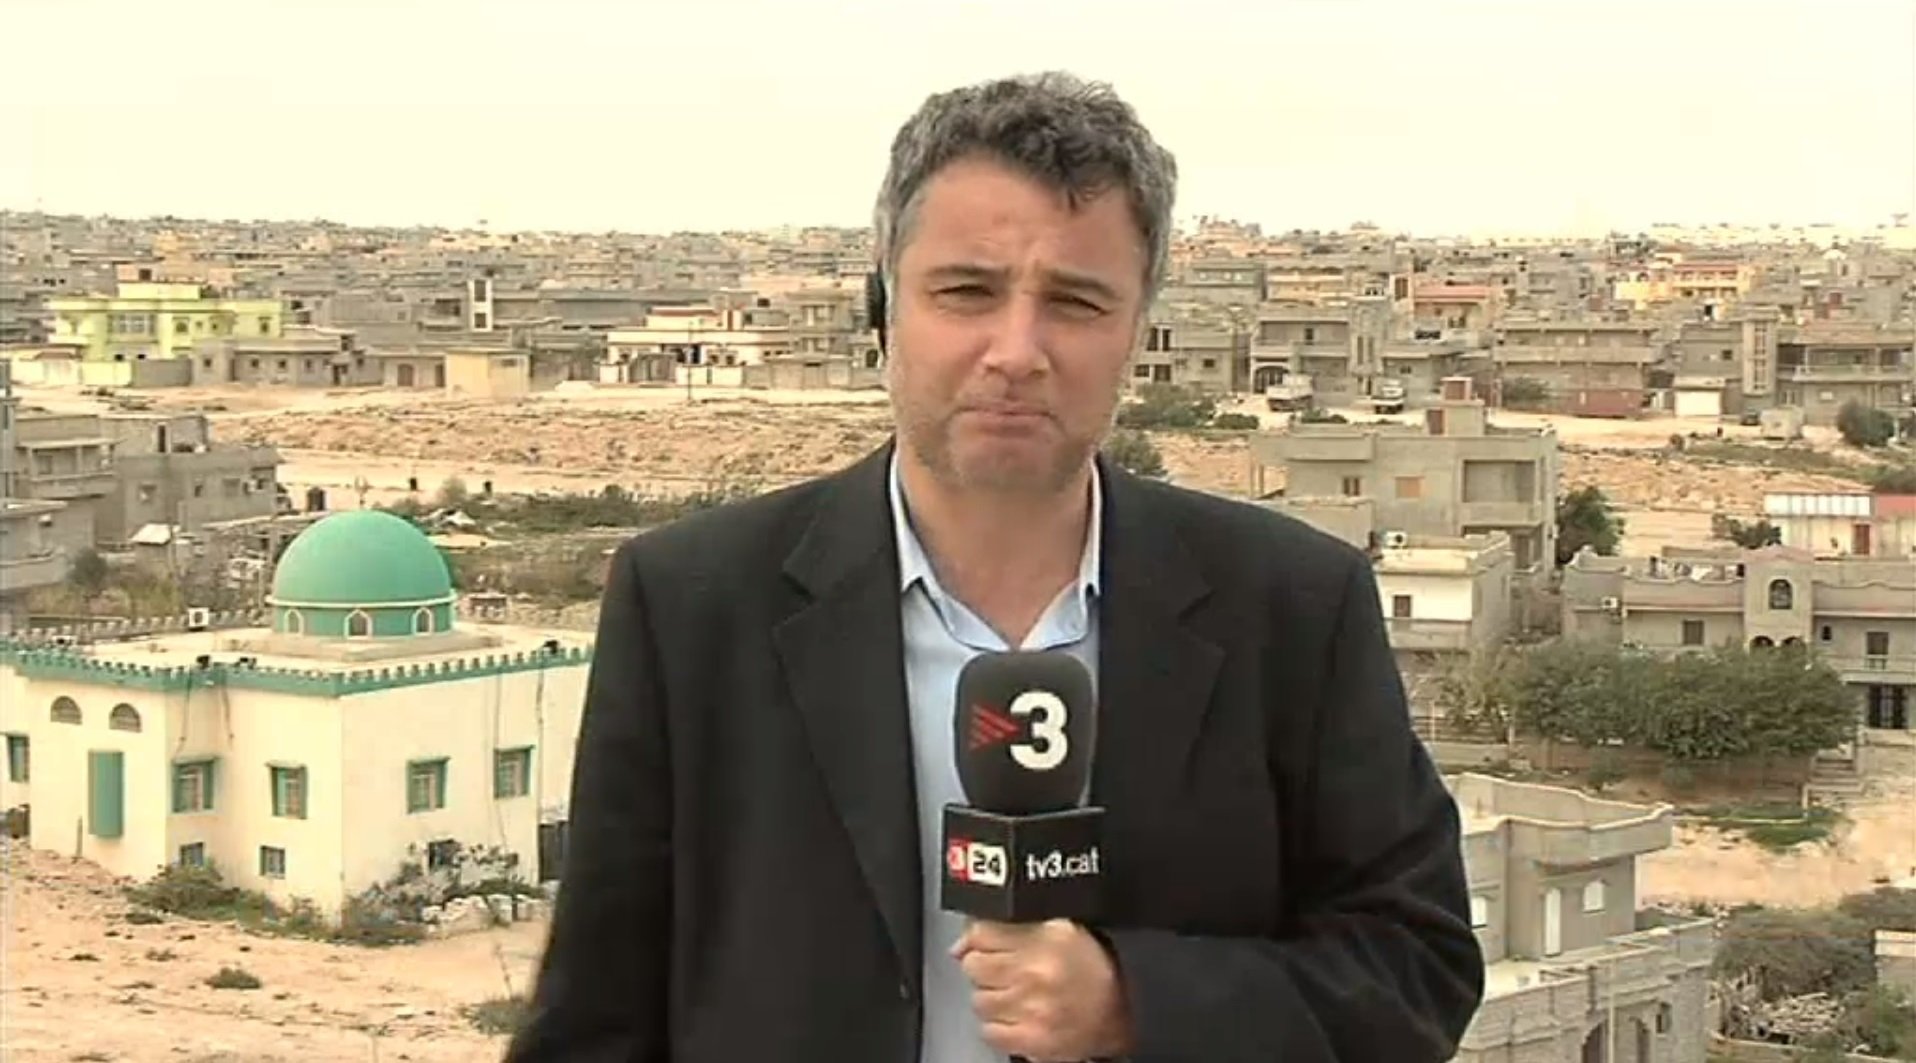 Un periodista de TV3 recibe mensajes desde Extremadura: "¿Estáis bien? ¿Corréis peligro?"